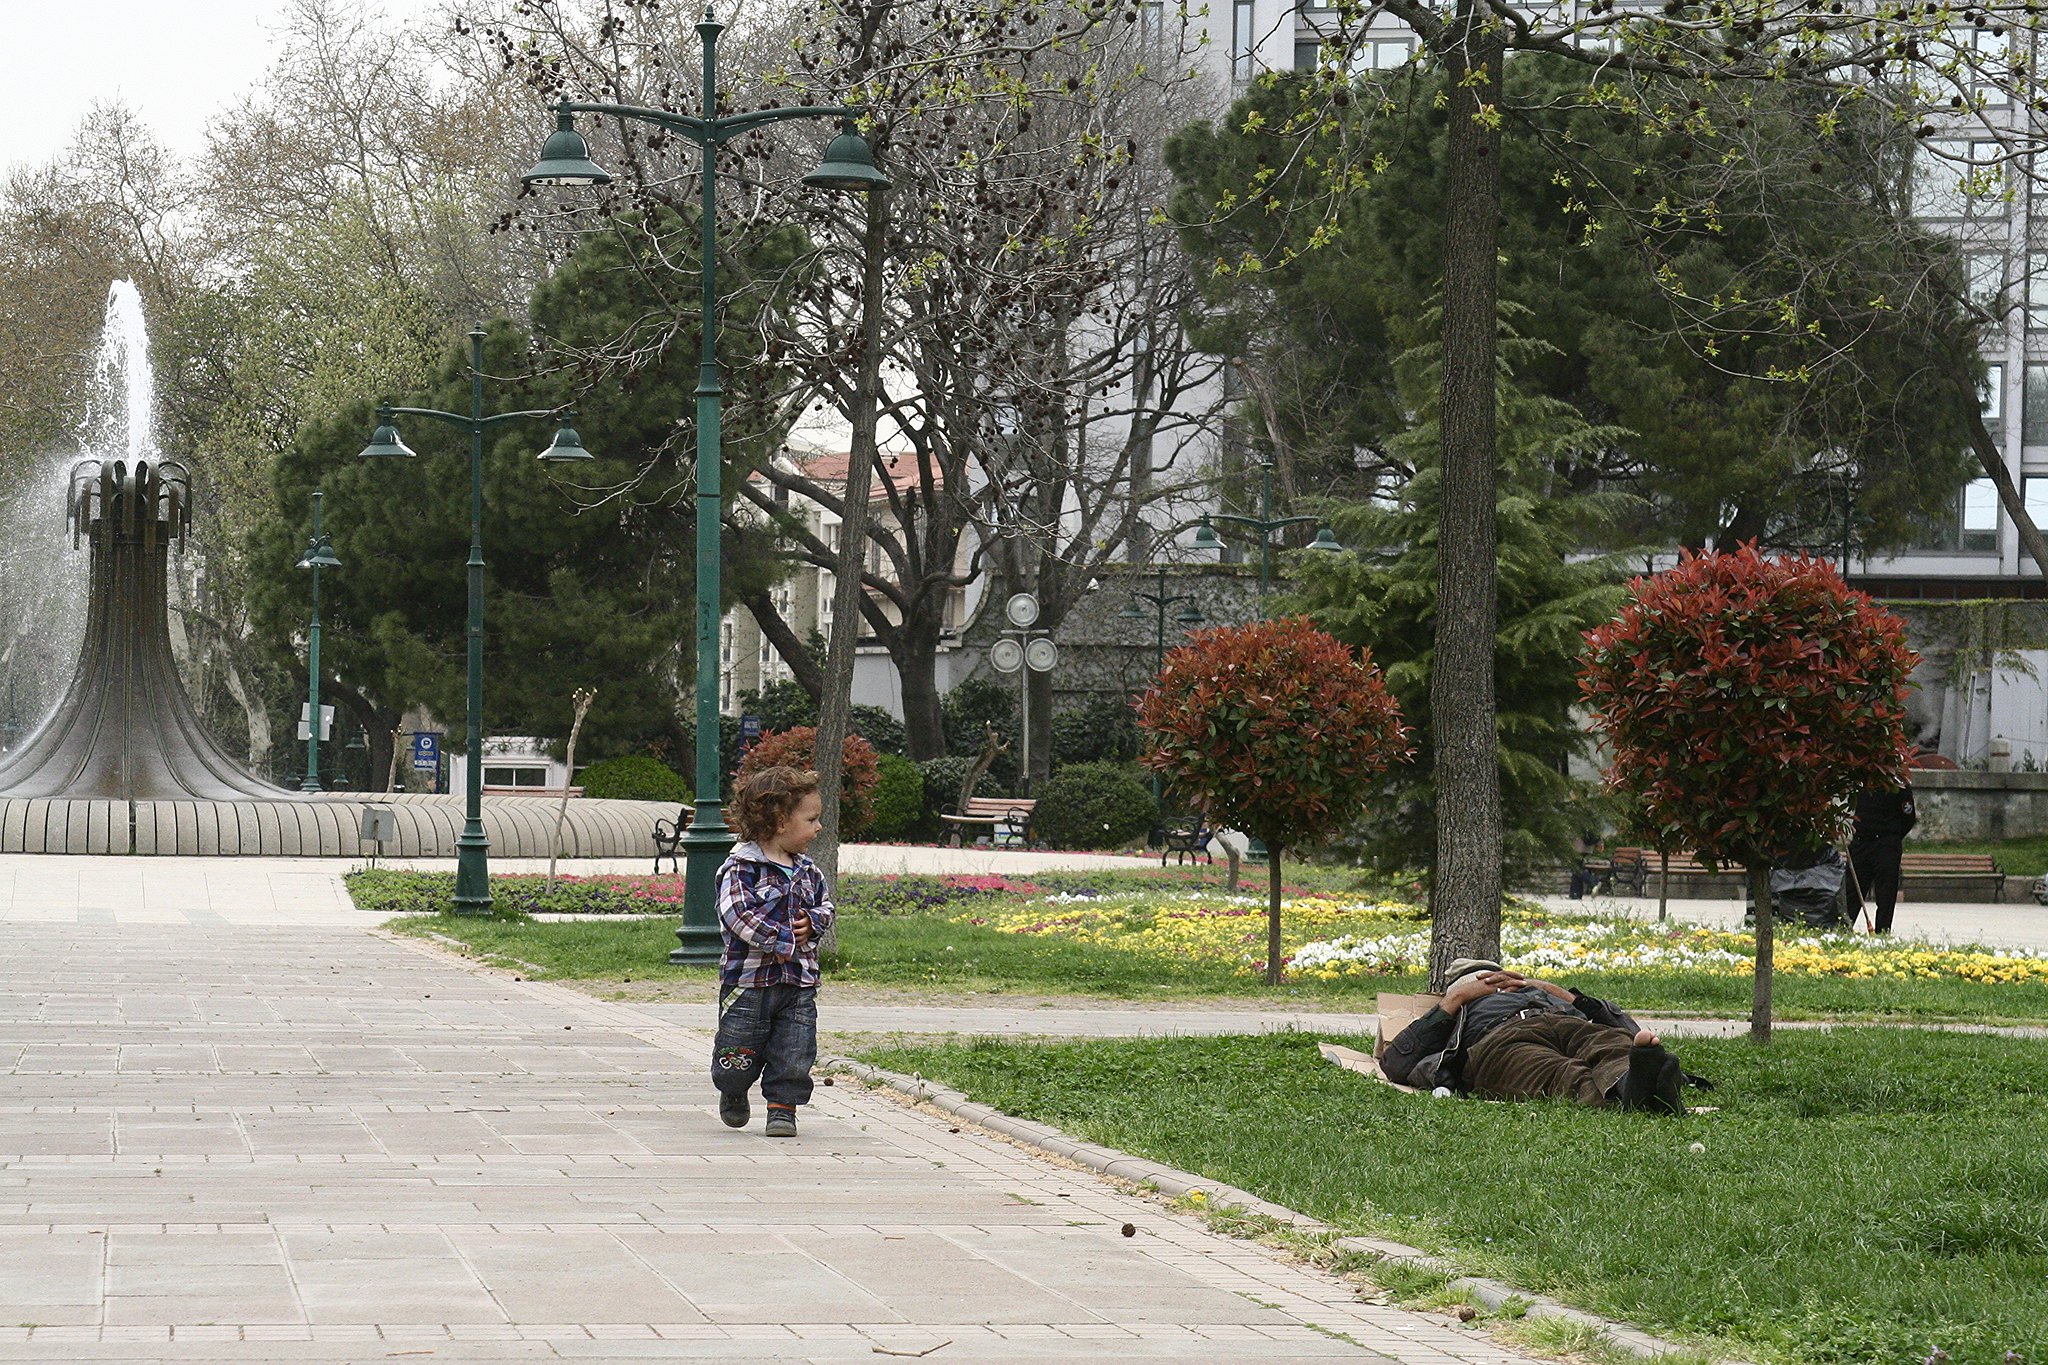 K in Gezi Park